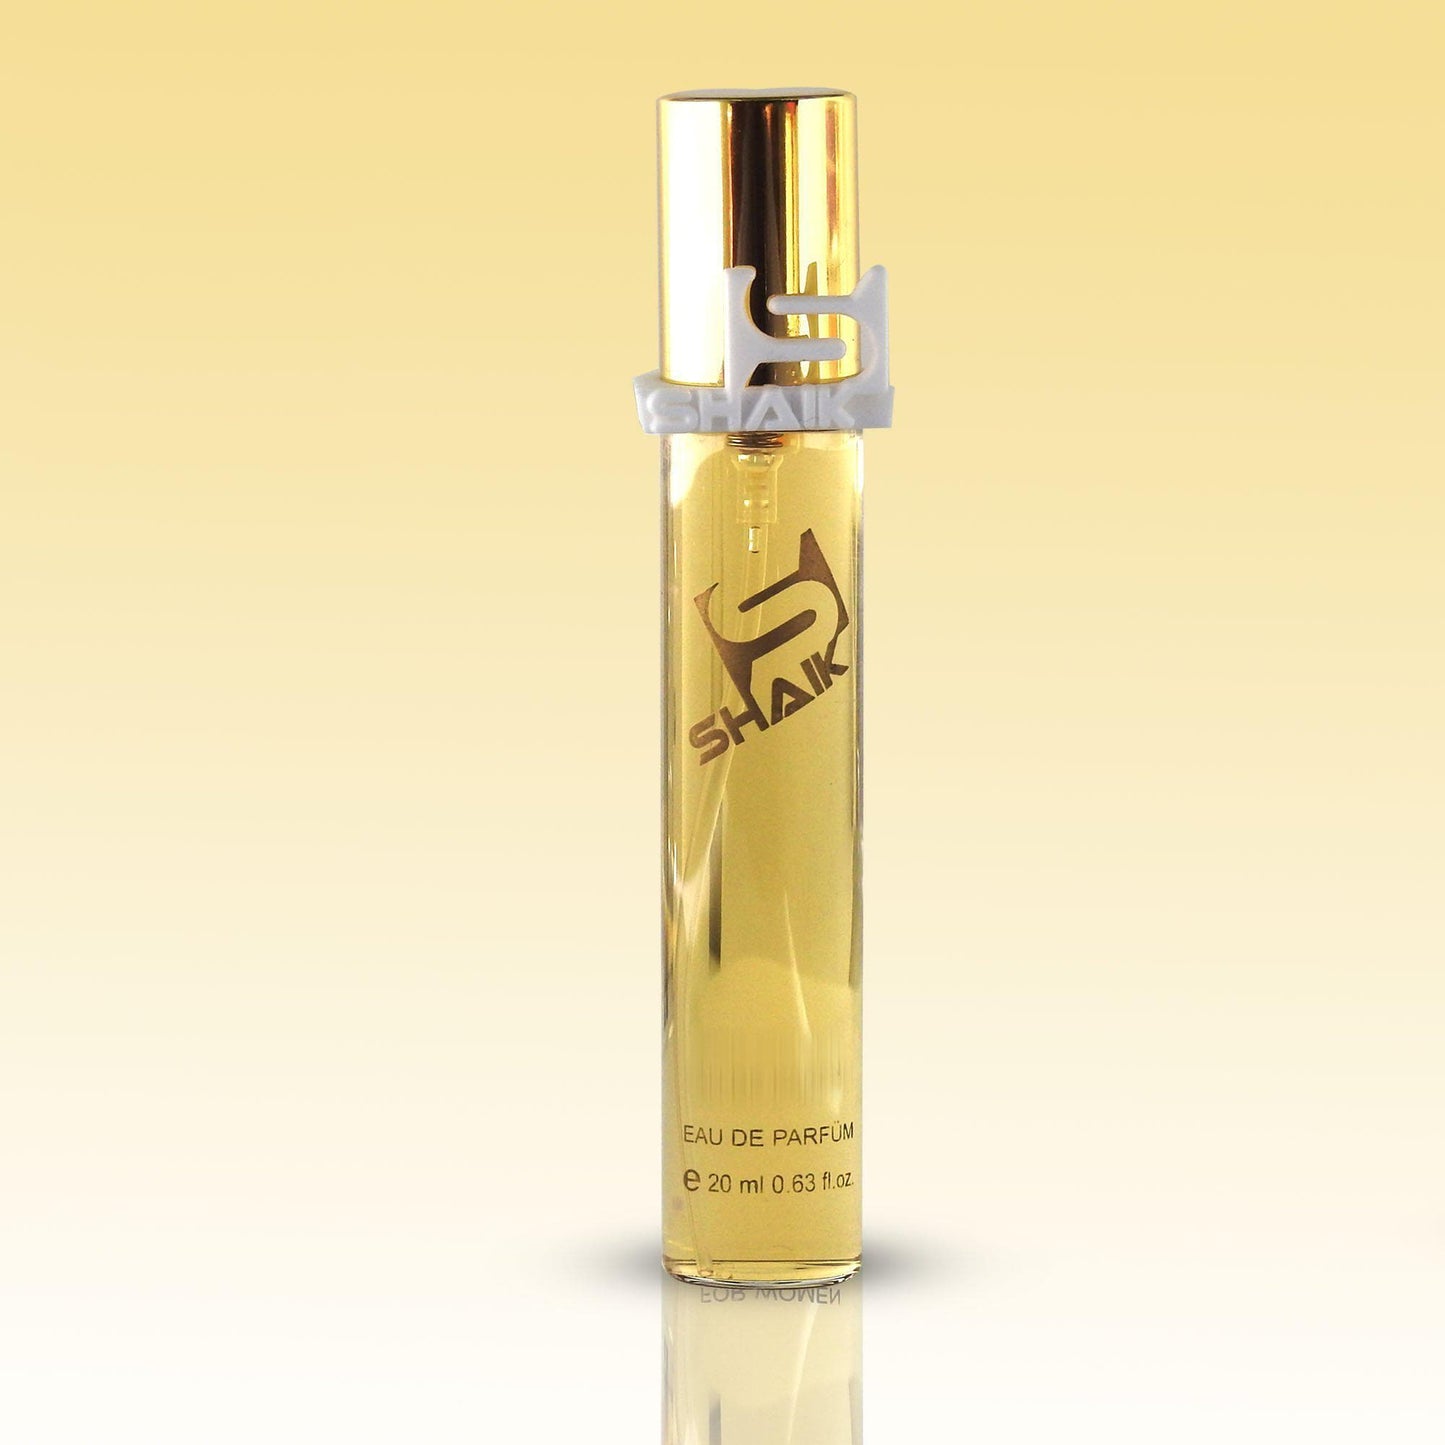 Shaik - 208 - Rose, Jasmine, Musk - Shaik Perfume